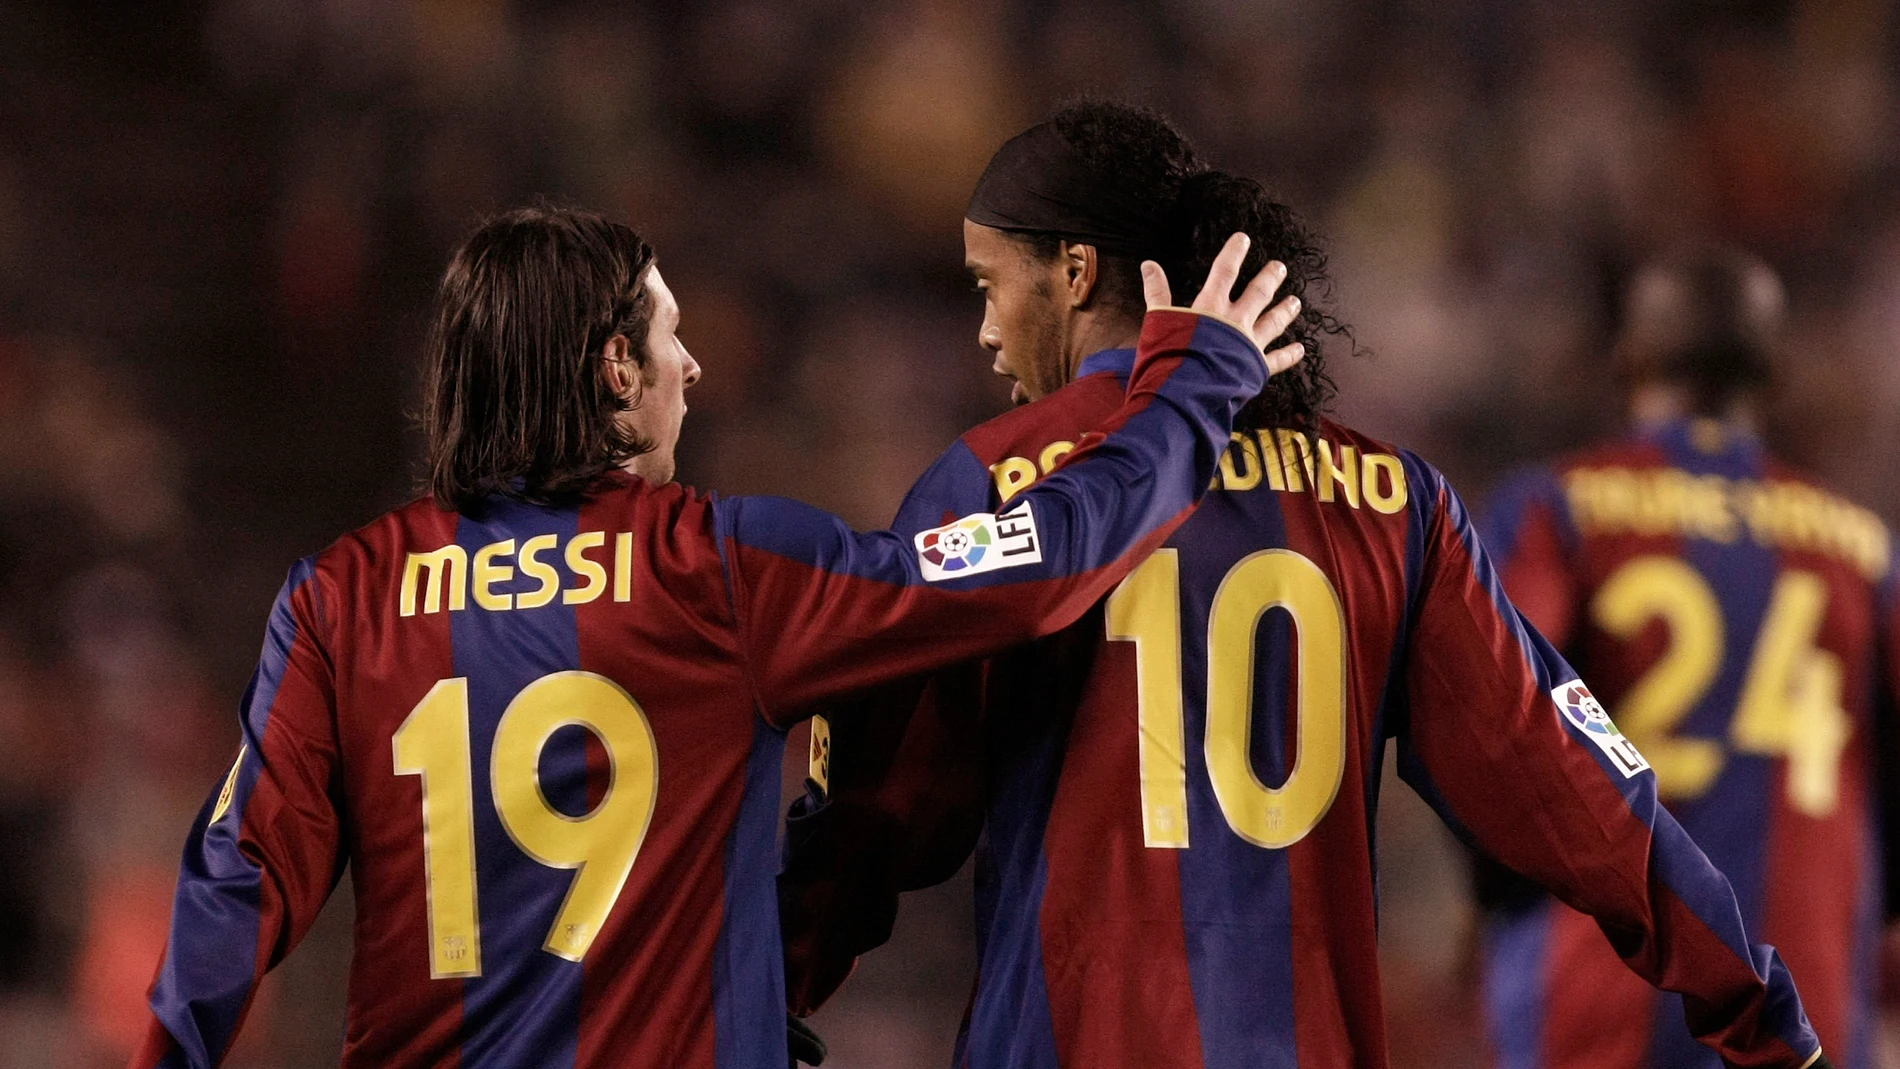 Messi y Ronaldinho, durante un partido